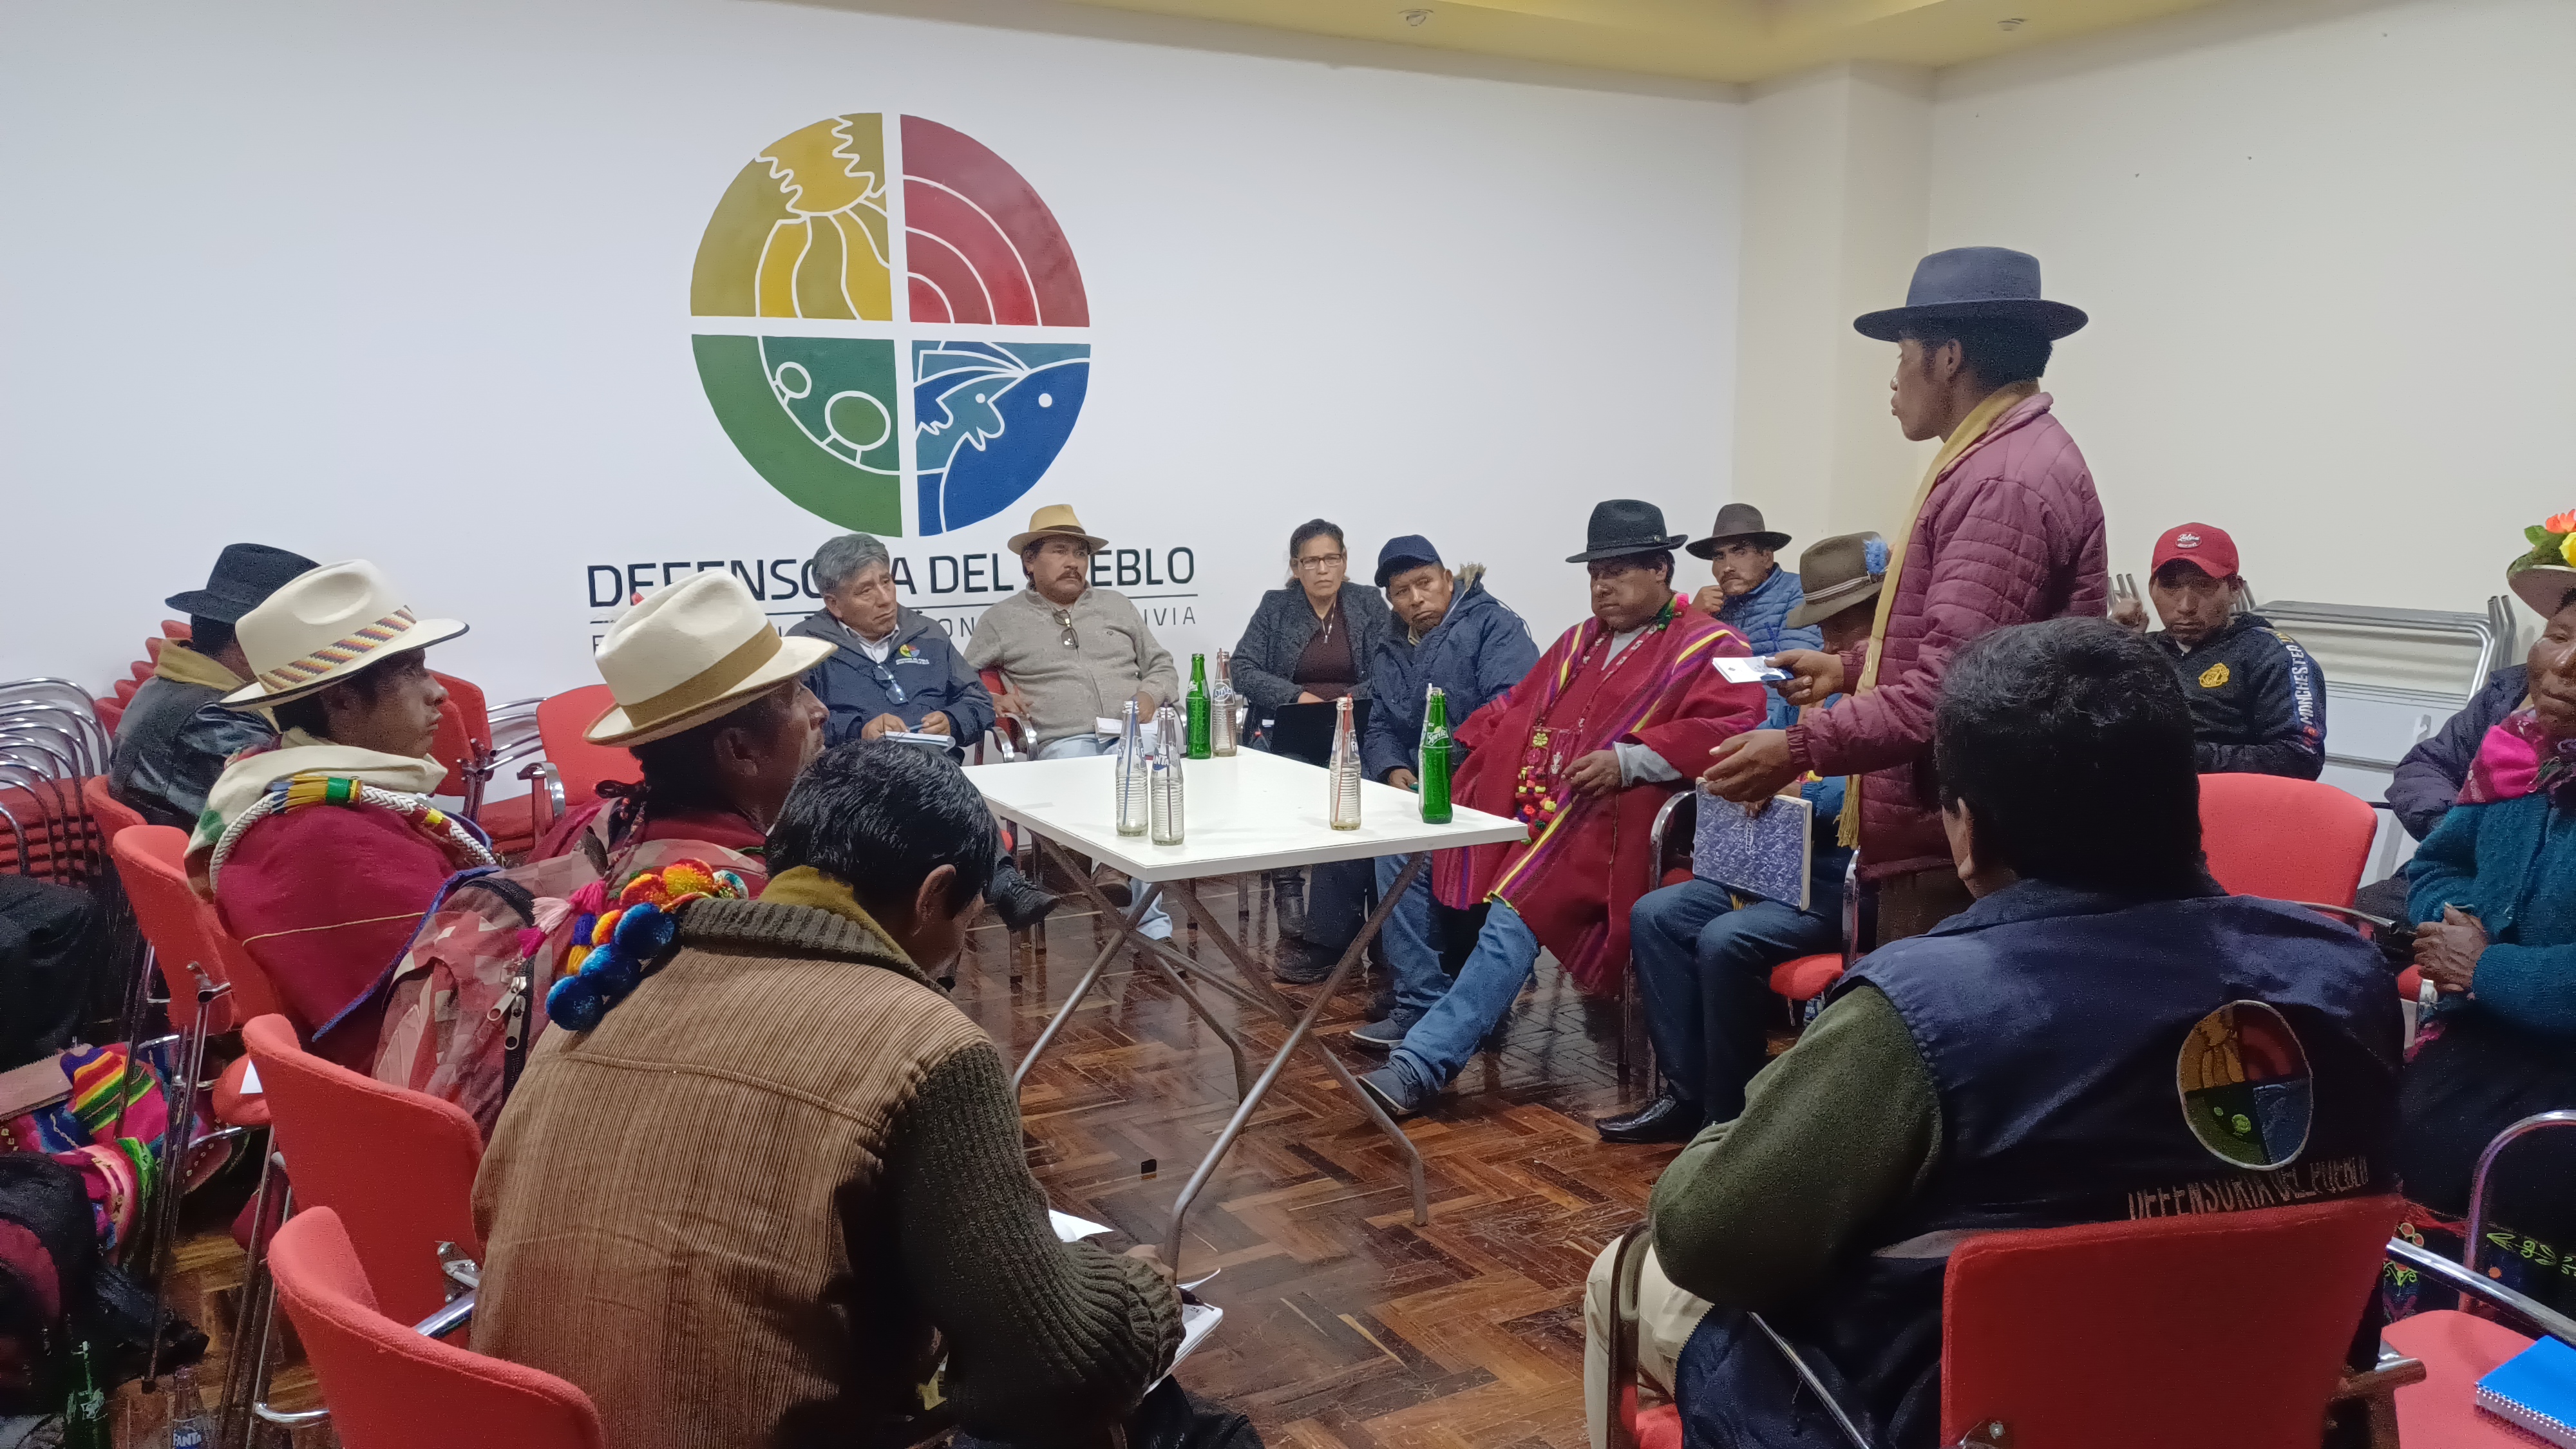 La Paz: Defensoría del Pueblo logró la firma de un acuerdo de entendimiento entre autoridades de la comunidad Pipini del municipio de Colquiri